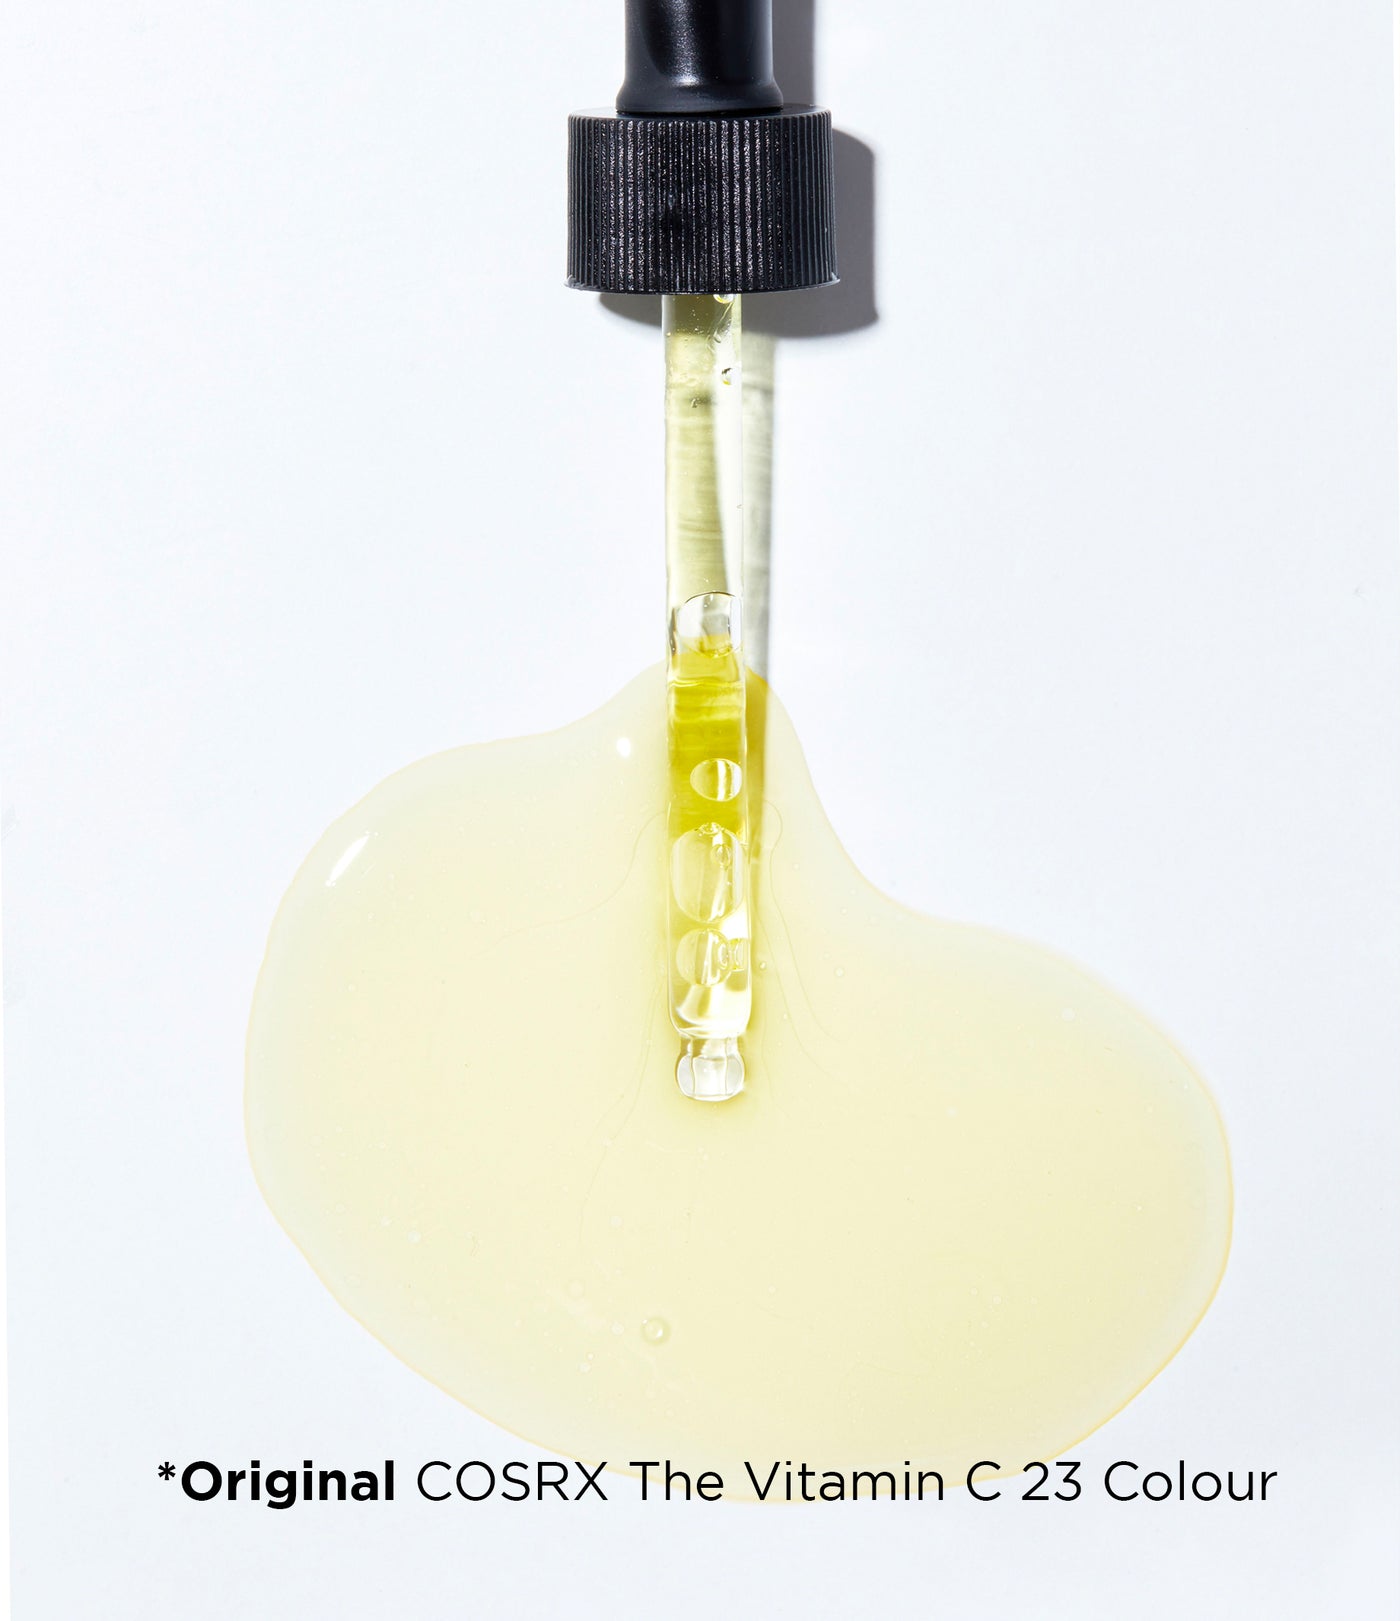 Cosrx Clear Skin Essentials Kit